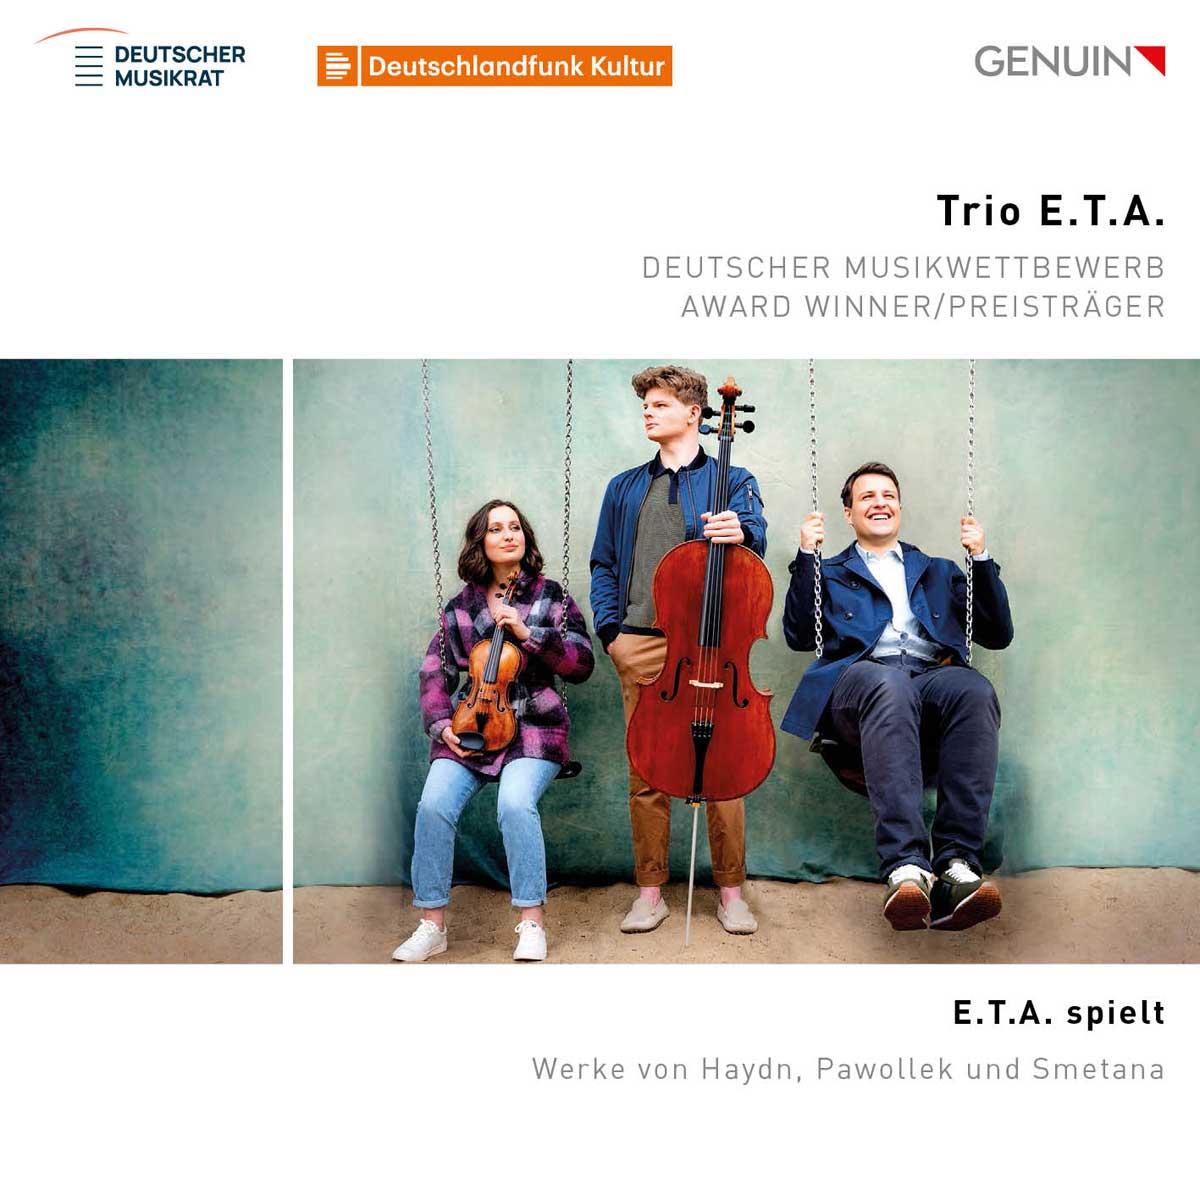 CD album cover 'E.T.A. spielt  E.T.A. plays' (GEN 23816) with Trio E.T.A.